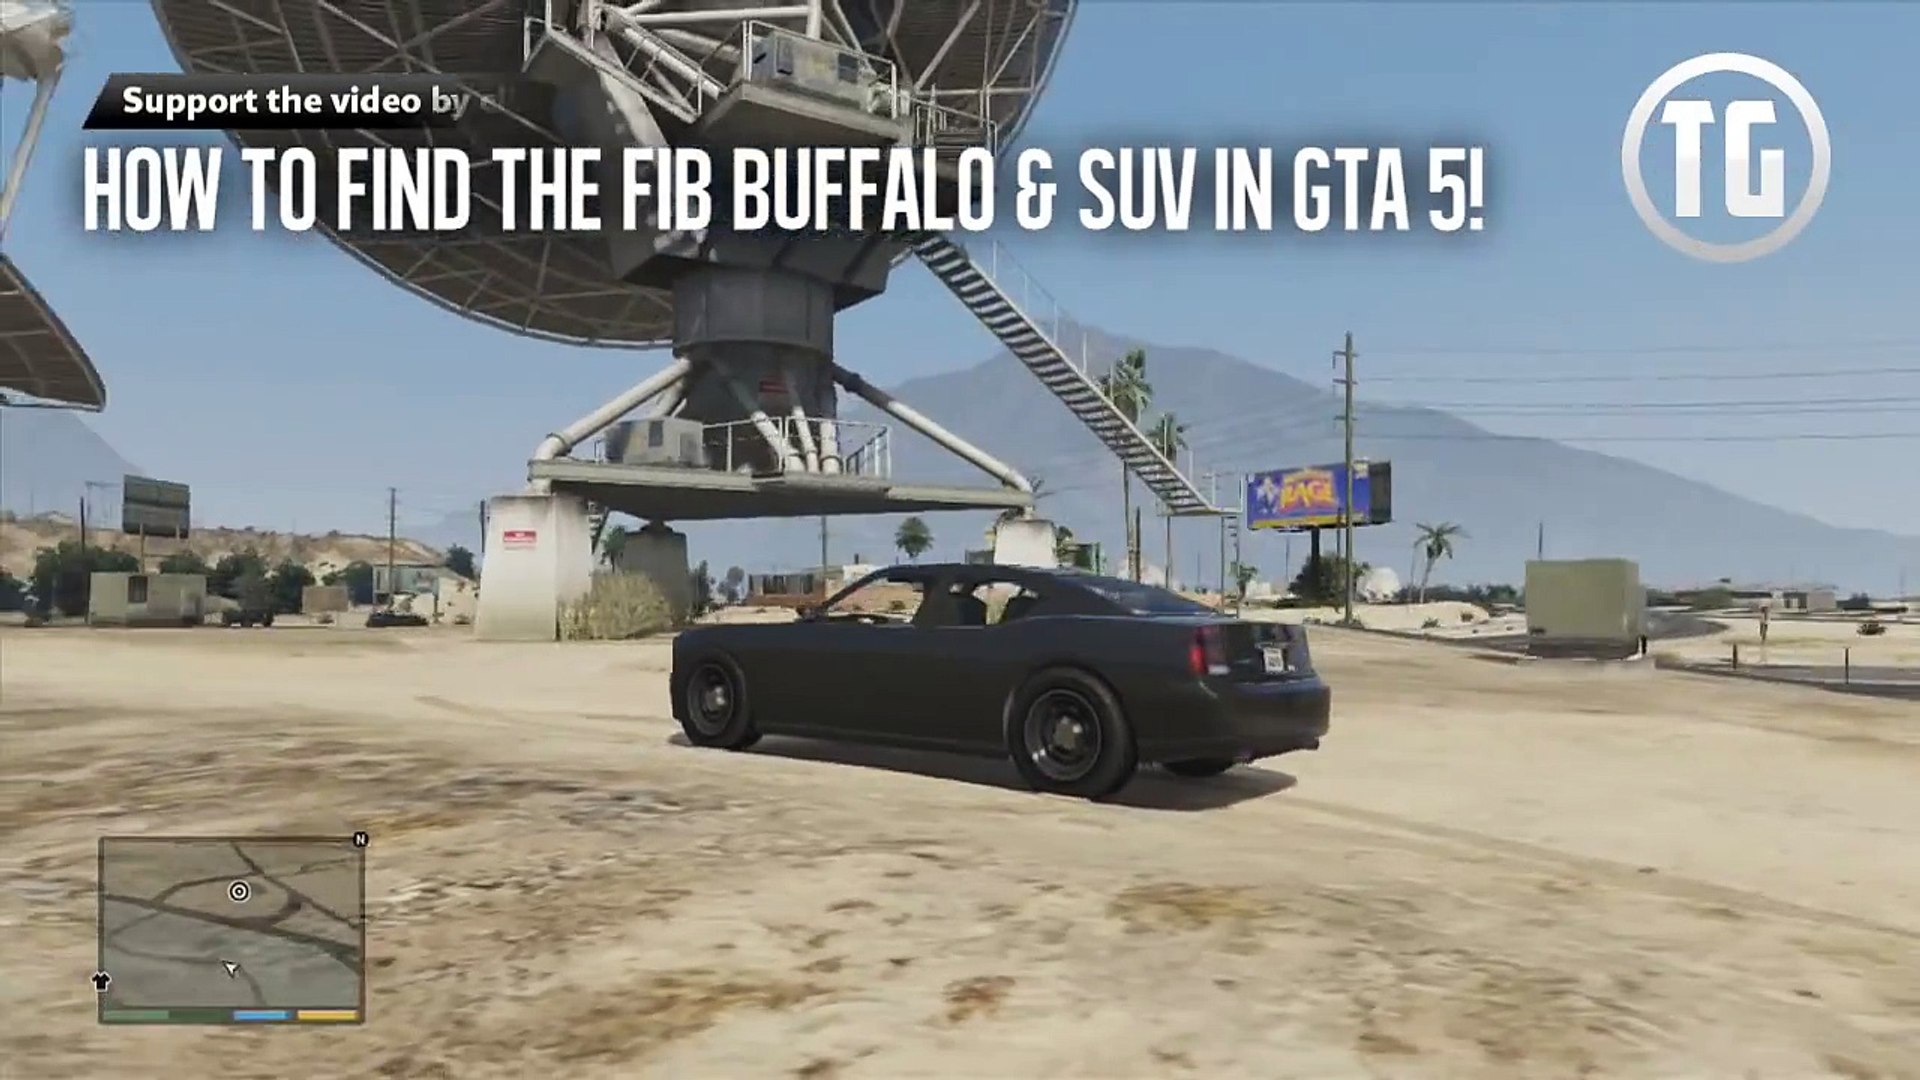 GTA 5 - FIB Buffalo & SUV Location Guide (GTA V) - video Dailymotion